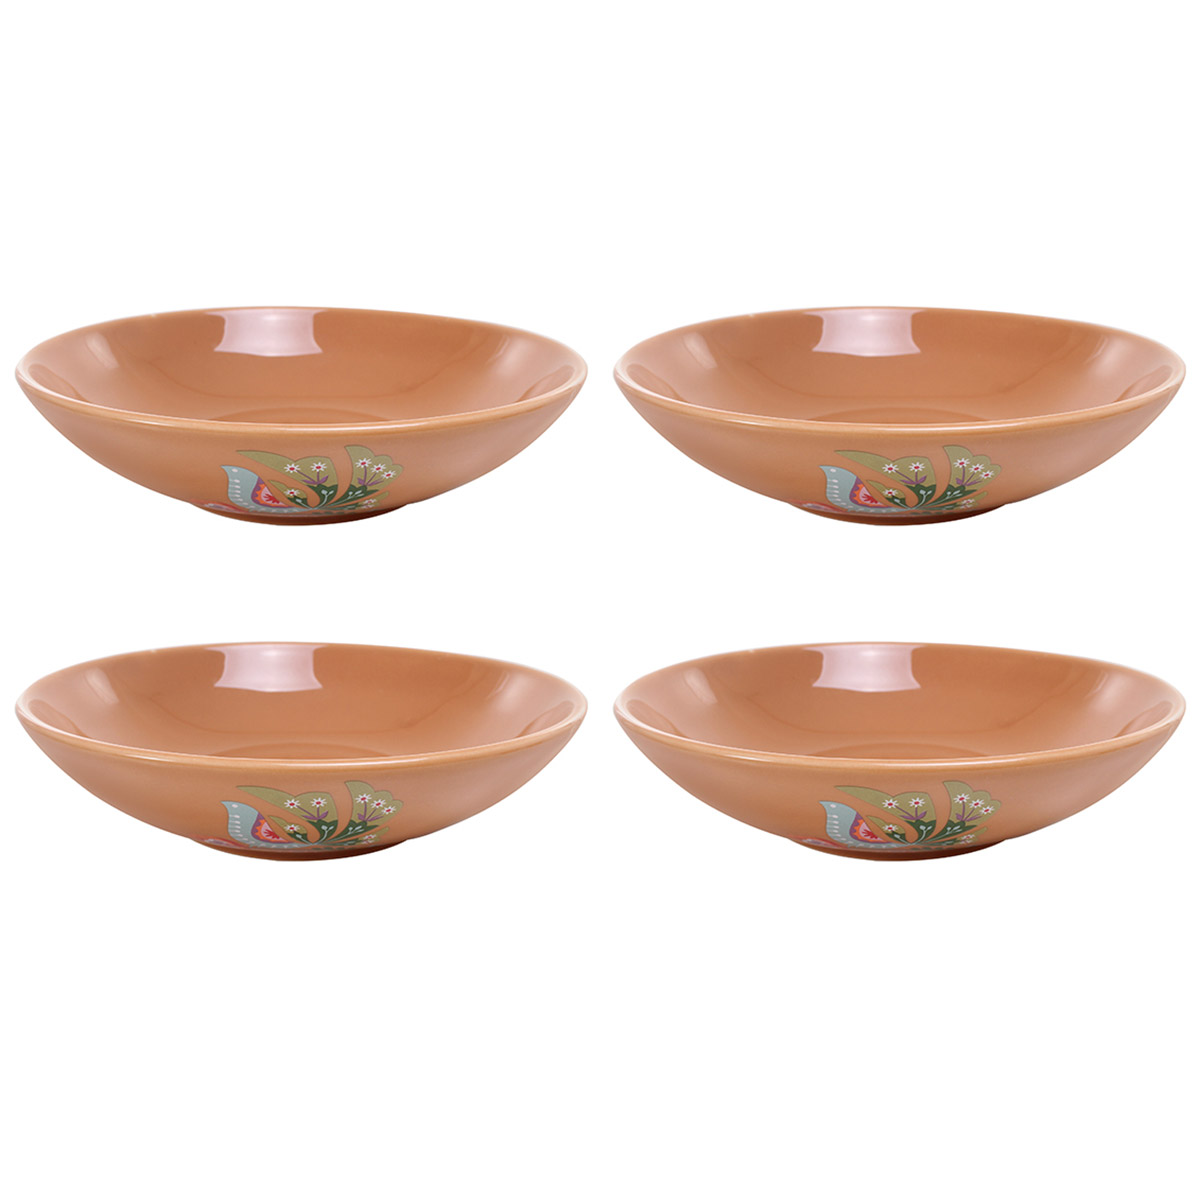 Juego Bowl Ceramica 4 Pzs Plato Cocina Hogar Crown Baccara